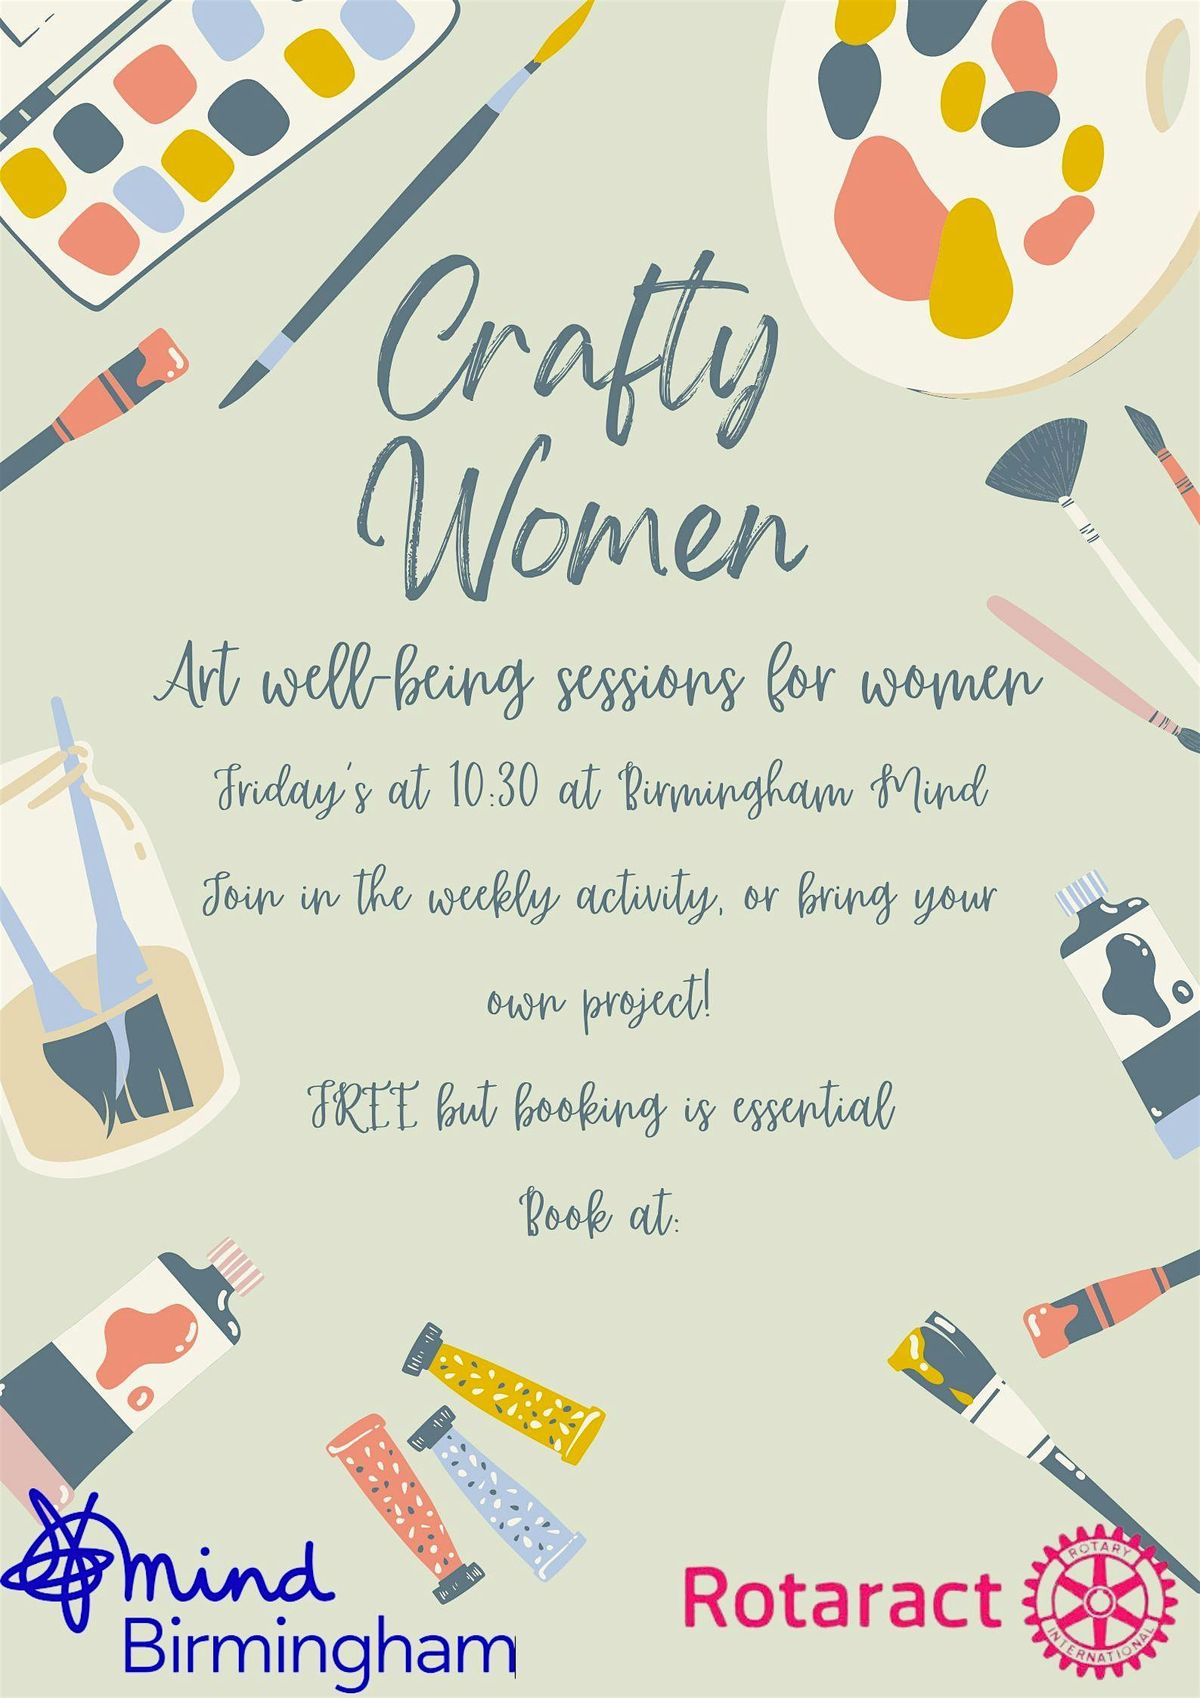 5th July- Crafty Women at Birmingham Mind